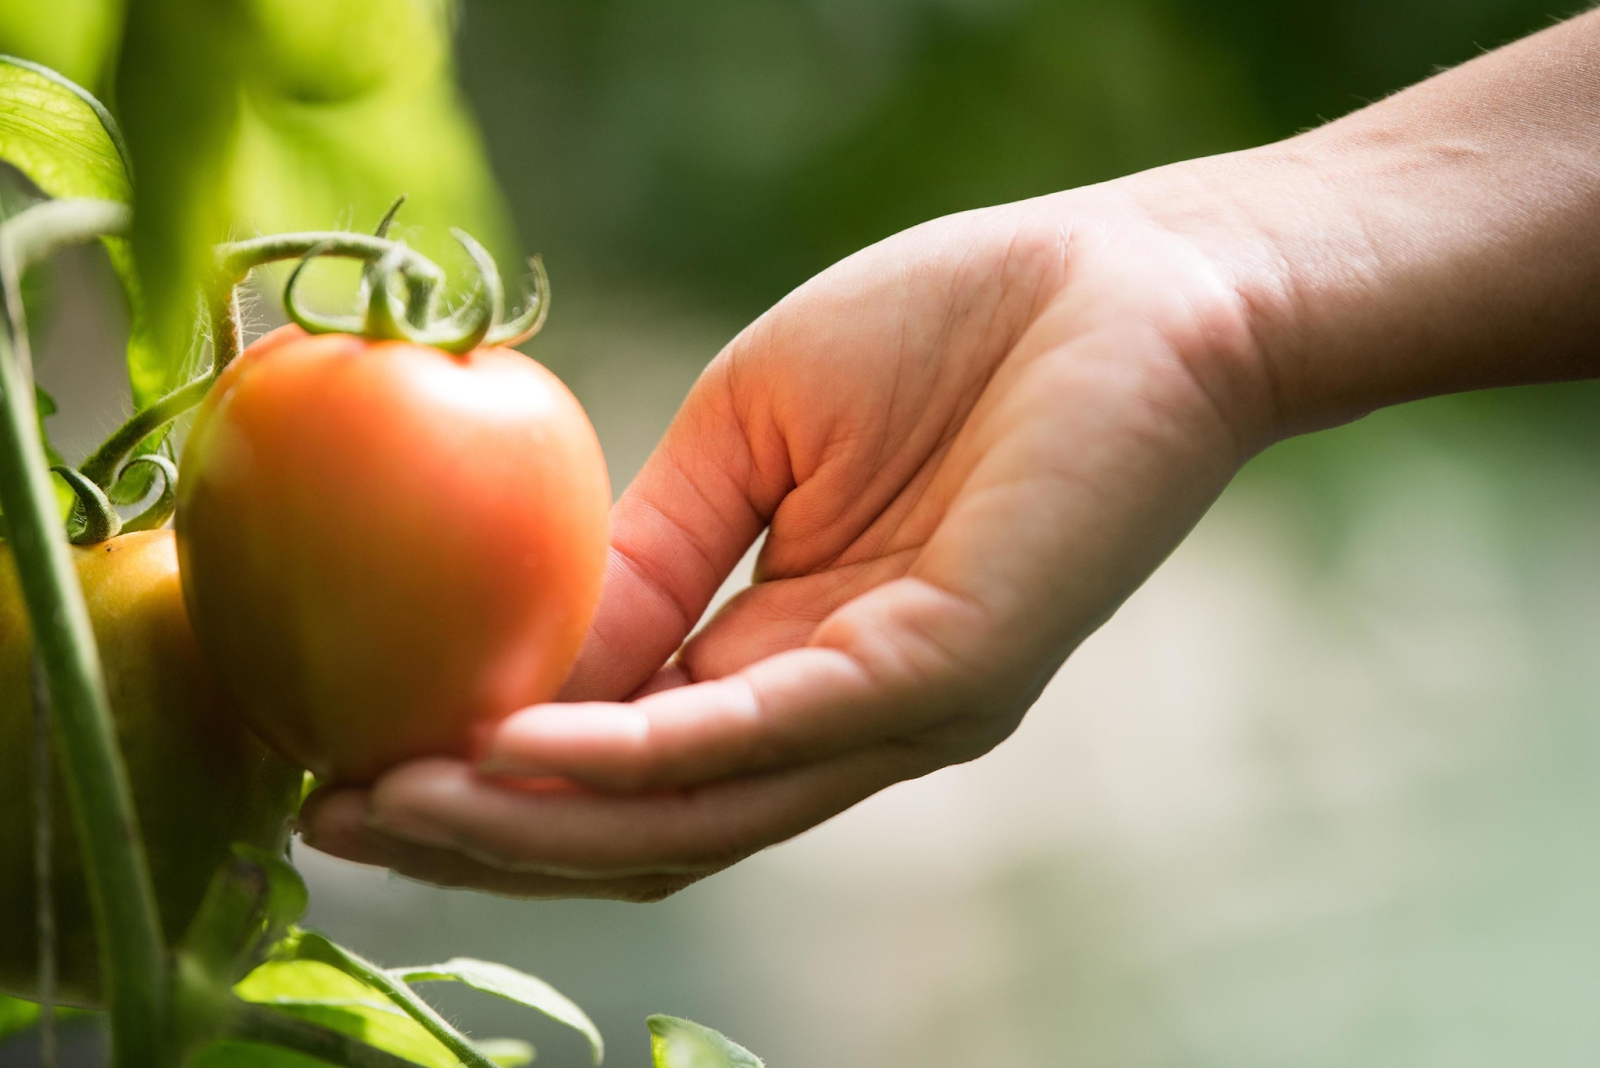 4 cách ăn cà chua dễ ngộ độc, âm thầm gây bệnh ung thư nhưng ai trong chúng ta cũng từng mắc 1 lần - Ảnh 3.